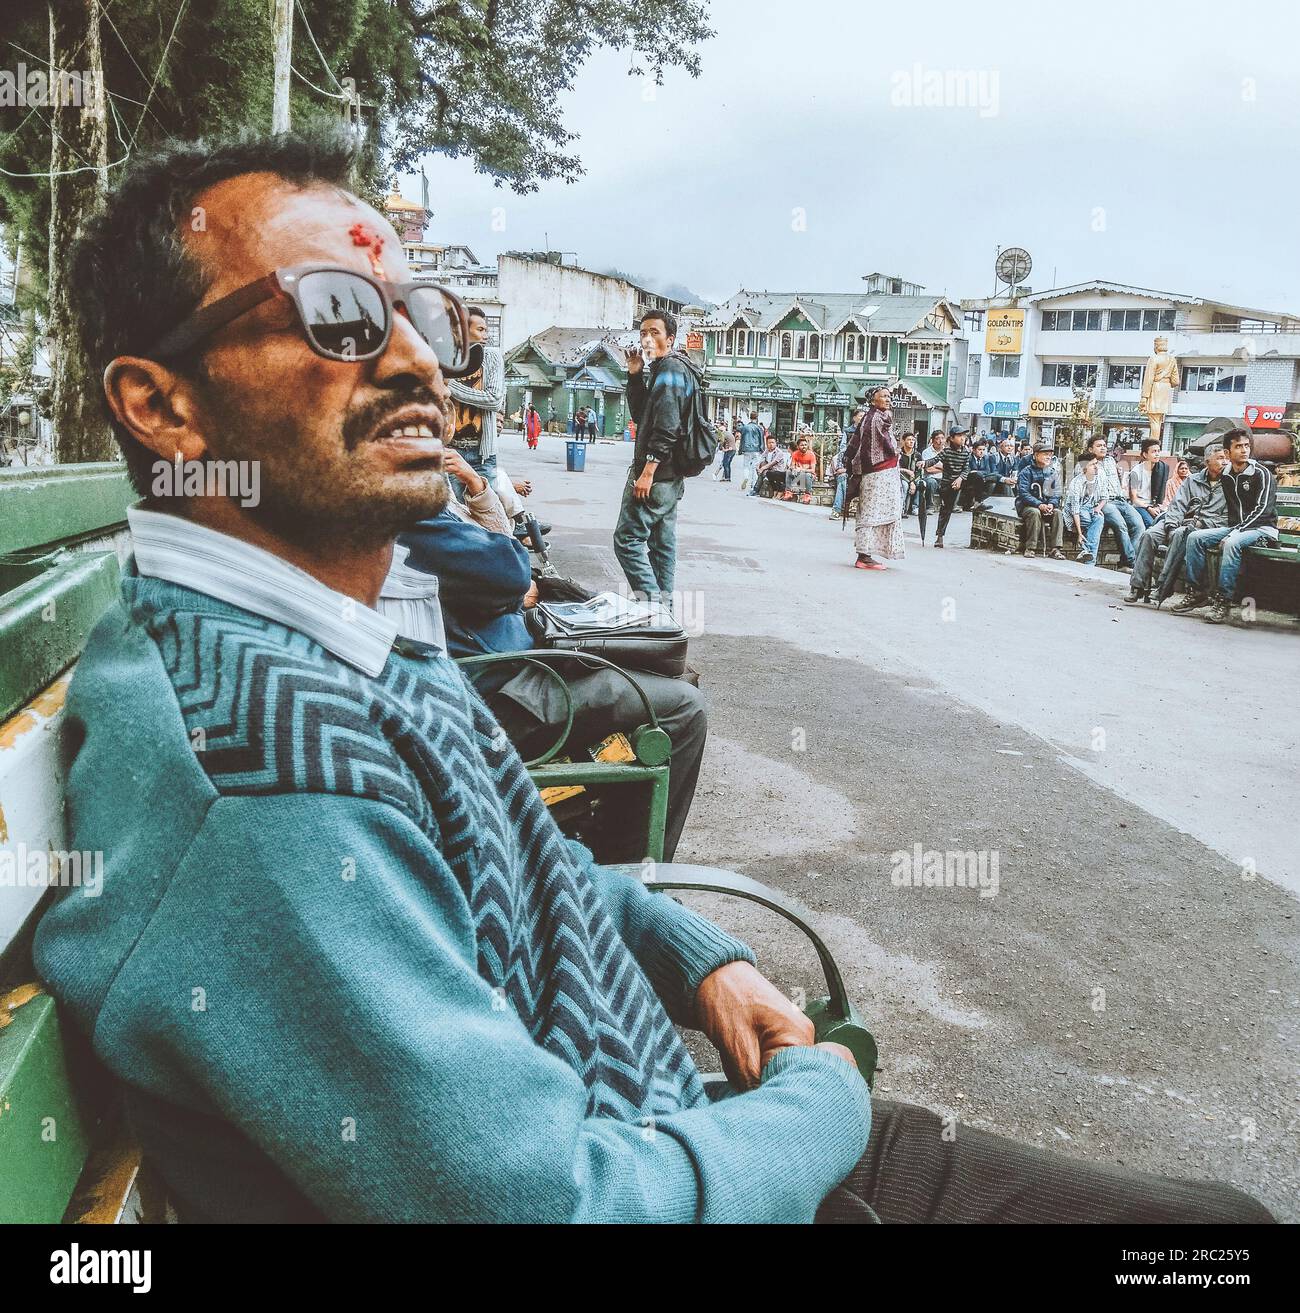 A man wearing sunglasses looking at big screen at Darjeeling City Centre, India. Stock Photo